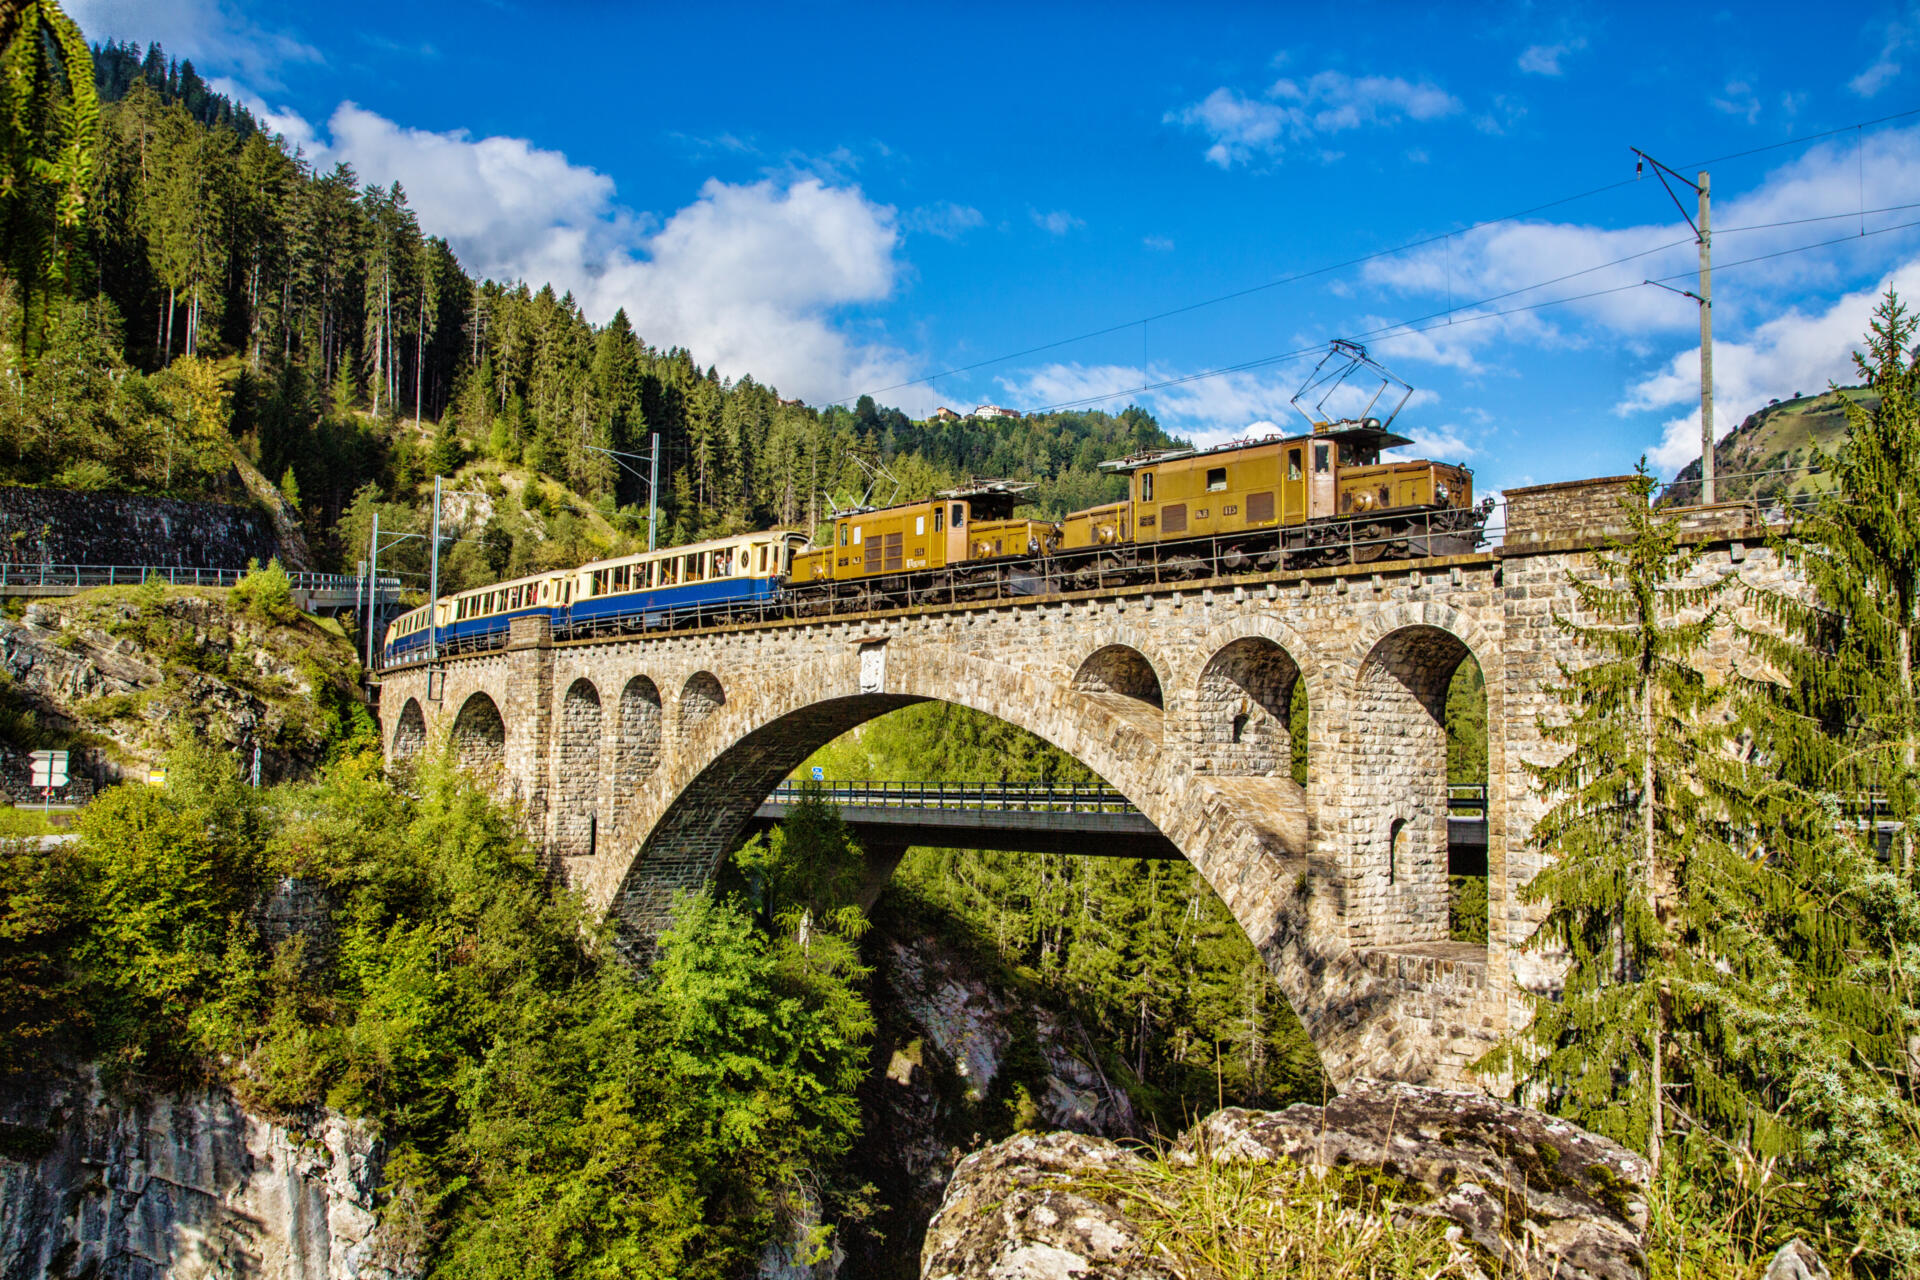 Für alle Freunde der Schweizer Bergbahnen ist diese Reise ein Leckerbissen. Und entführt Sie auf eine Zeitreise auf Schienen. Nostalgie und Abenteuer zugleich werden bei der Erlebnisfahrt der Rhätischen Bahn auf eine faszinierende Art und Weise verbunden.